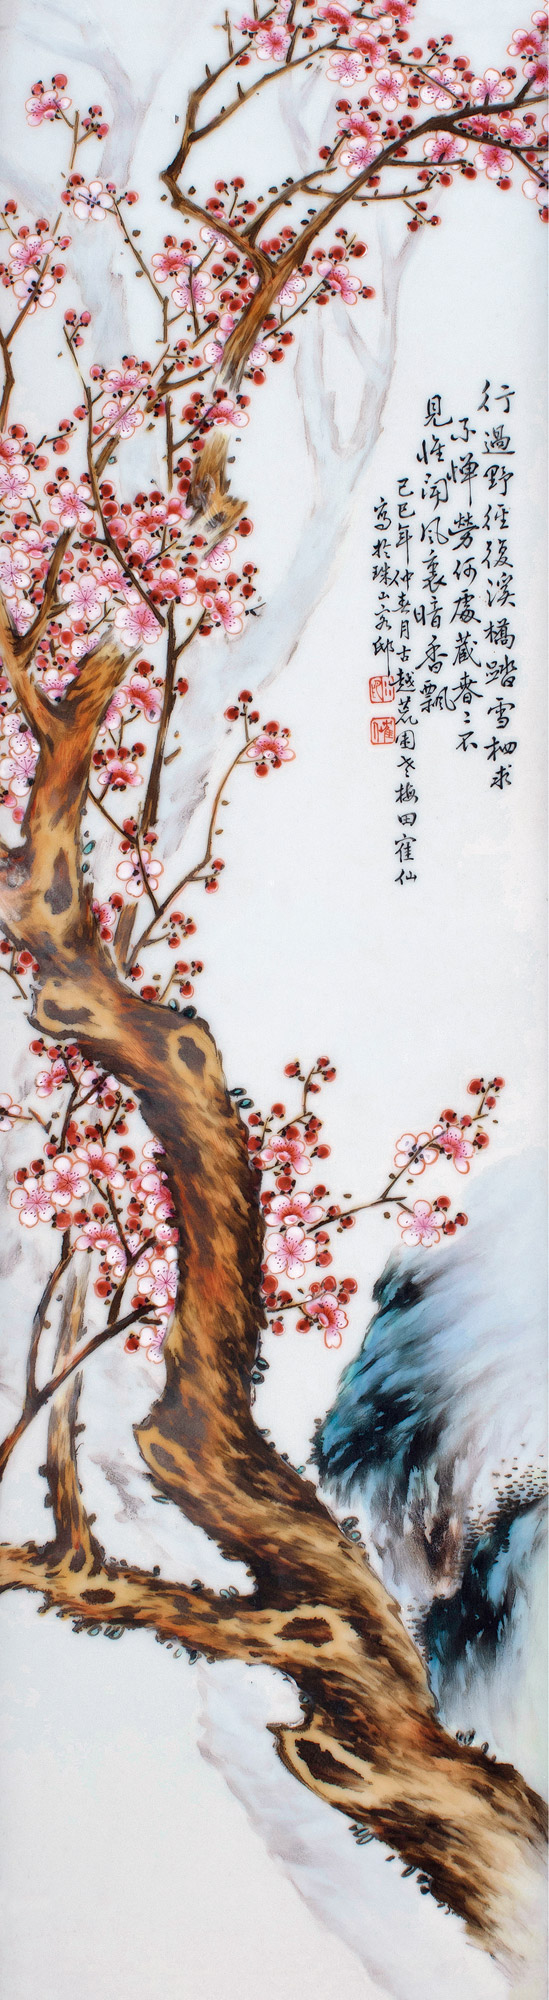 田鹤仙18941952月影梅花瓷板画